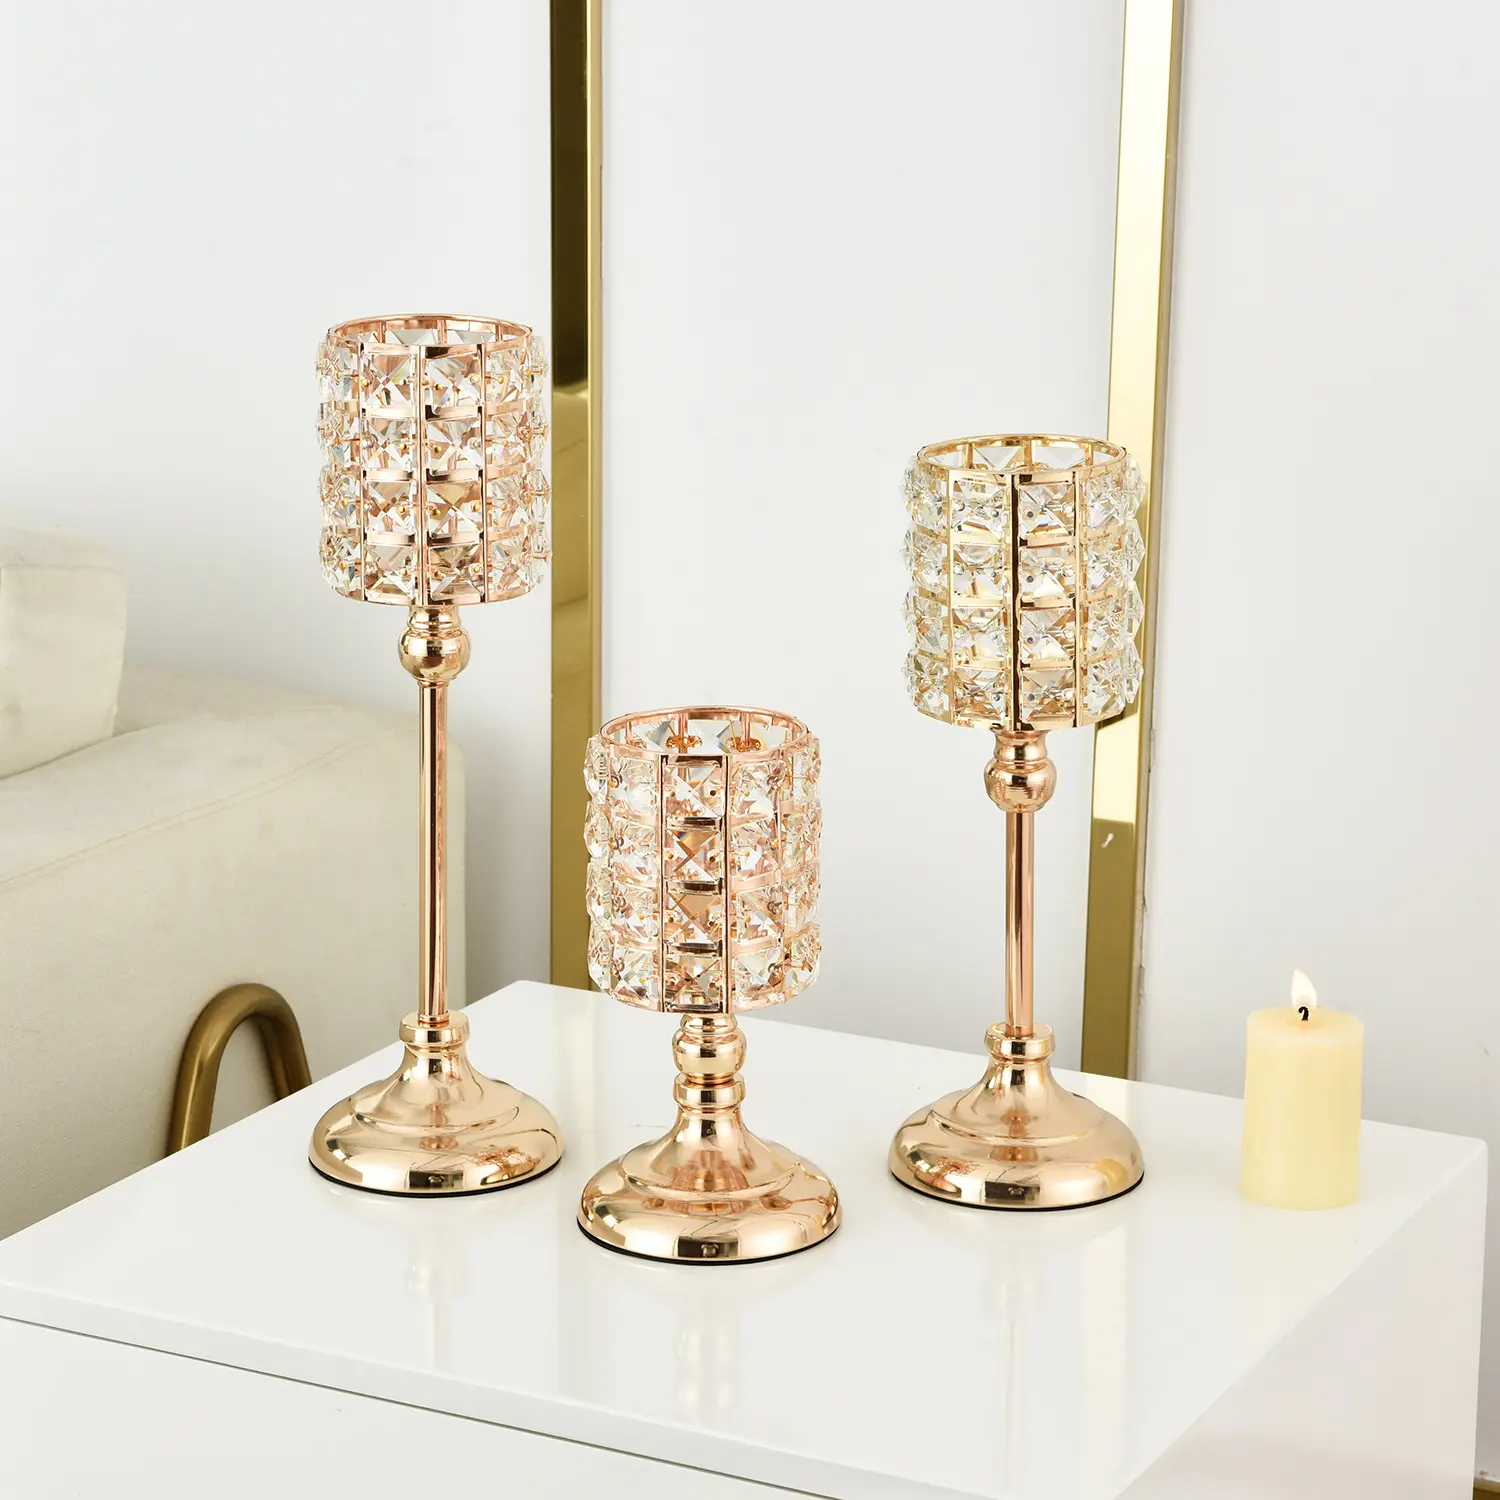 Moderne Tisch dekoration Hochzeitstag Säule Gold Luxus Shiny Candlestick Glas Kristall Kerzenhalter